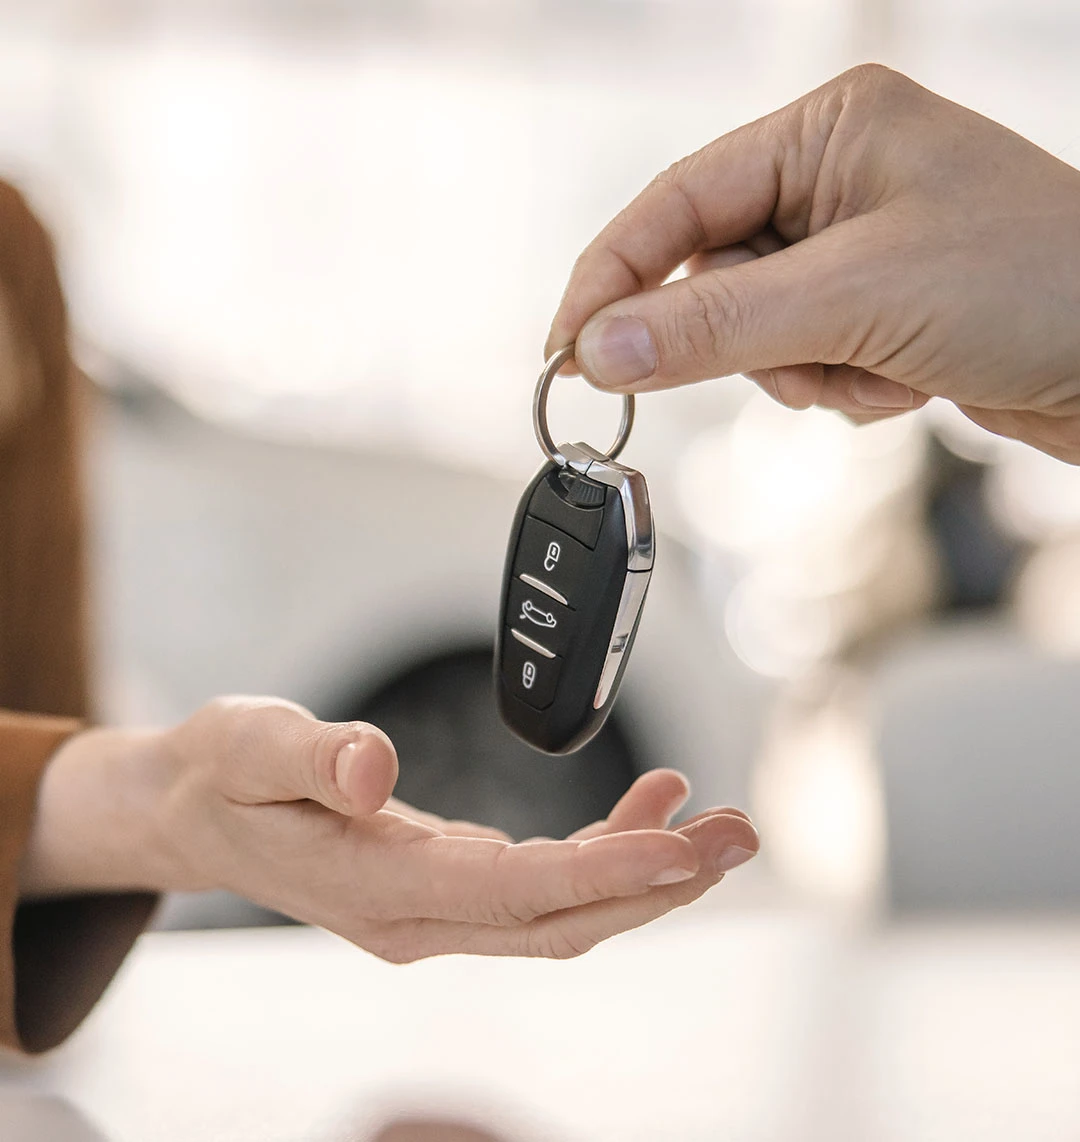 Eine Person reicht einer anderen Person einen Autoschlüssel. Im Fokus stehen dabei die Hände und der Schlüssel.